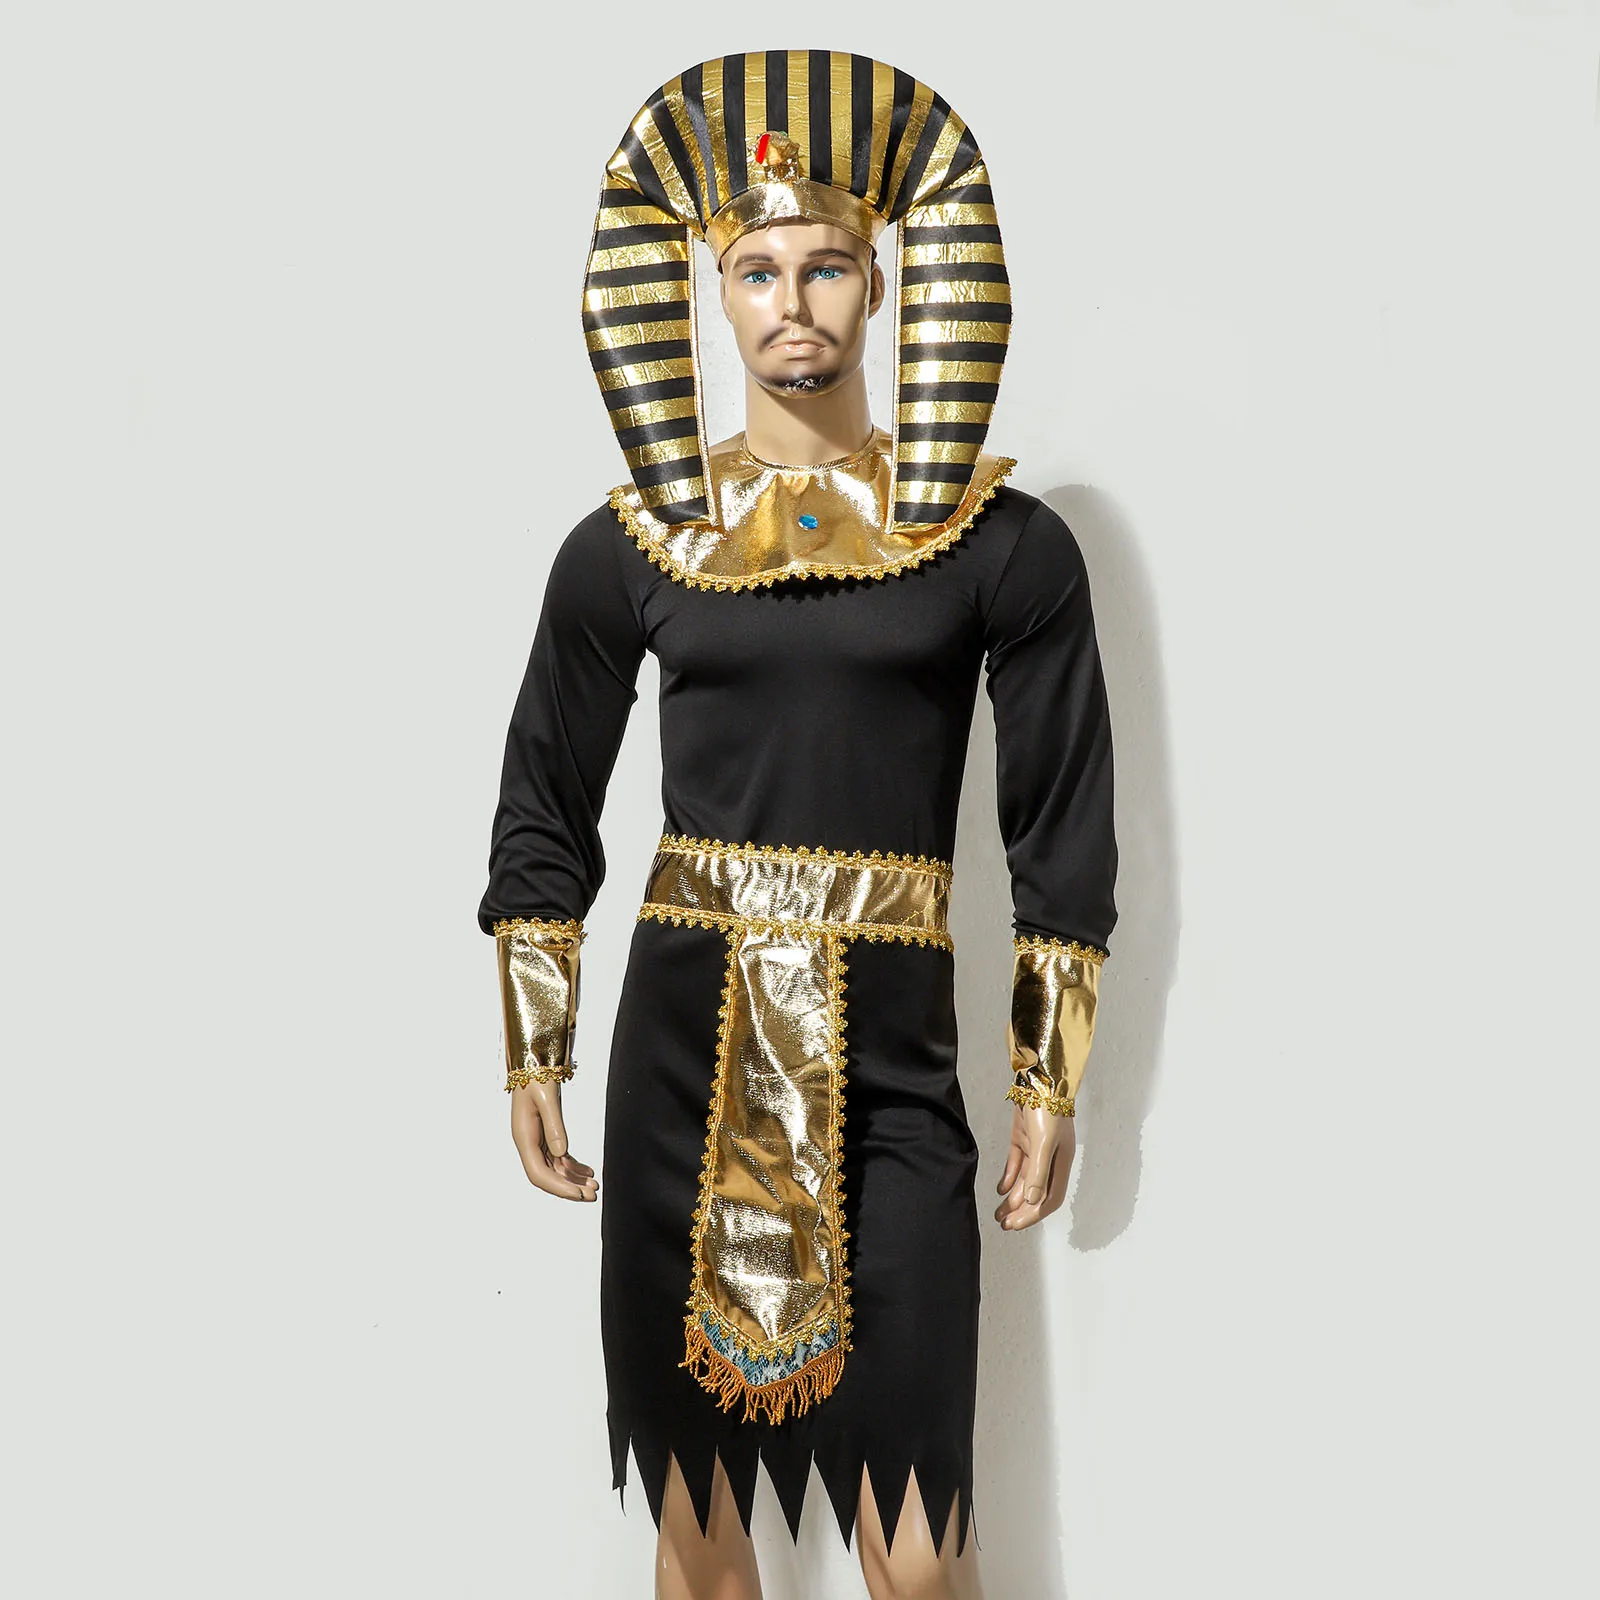 Costumi di Halloween antico faraone egitto re egiziano Cleopatra regina  Costume accessori sacerdote Cosplay abbigliamento per uomo Wome